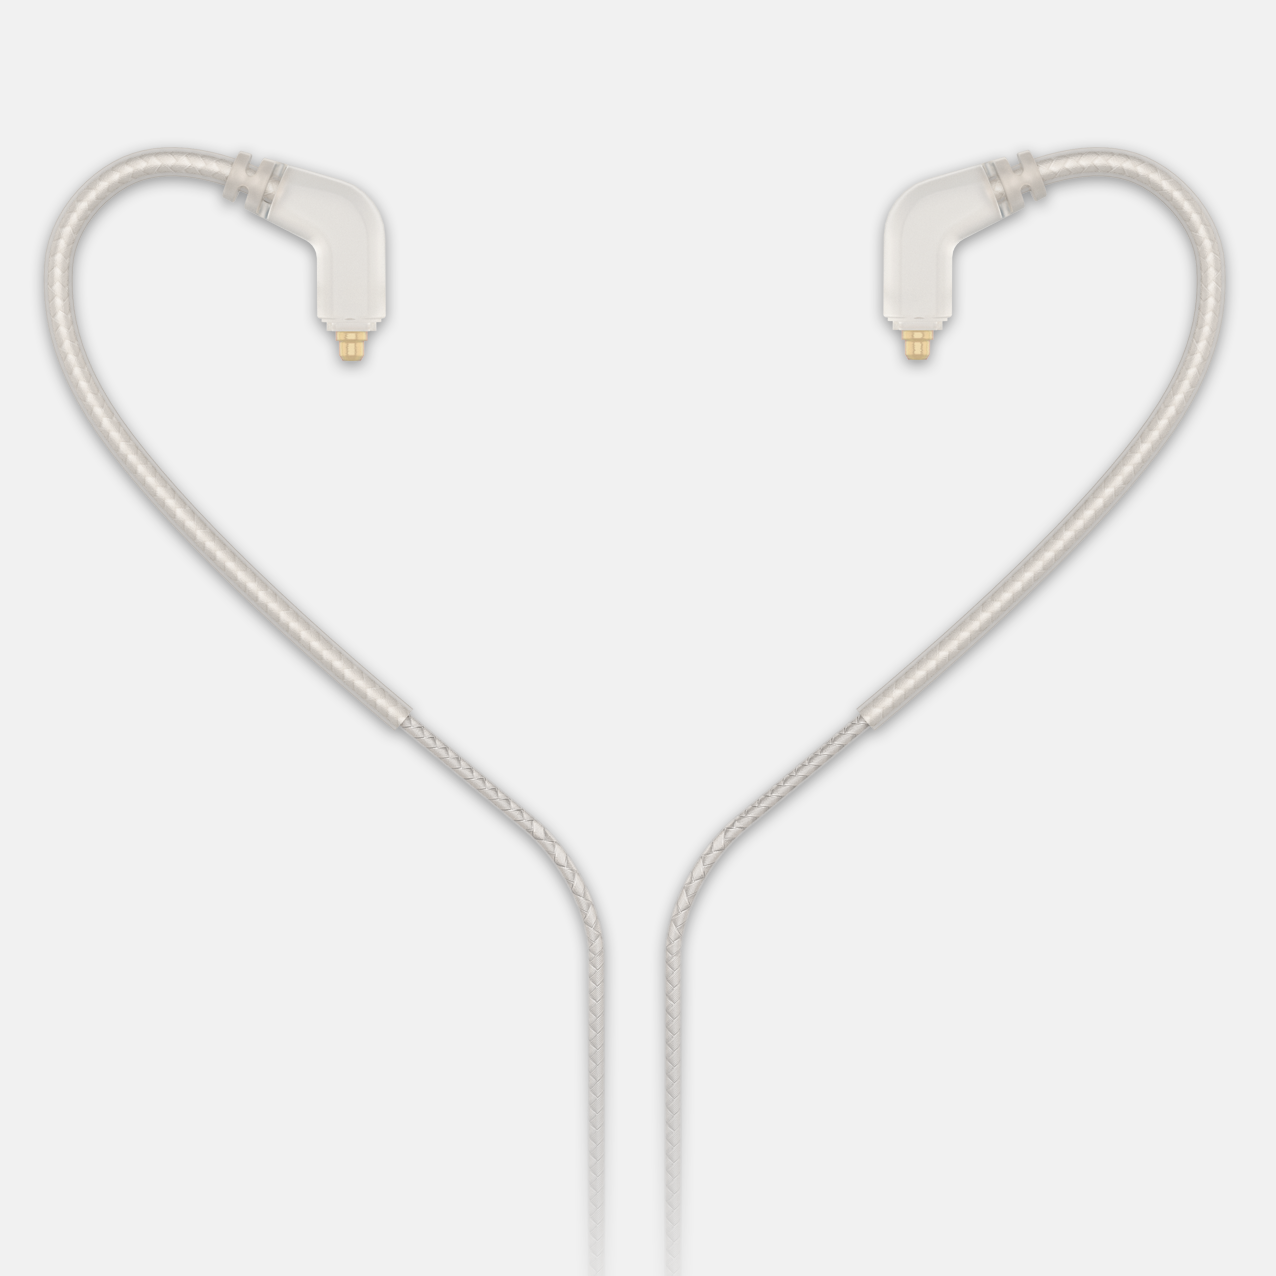 IMC251-CL - Cáp cao cấp cho màn hình trong tai 